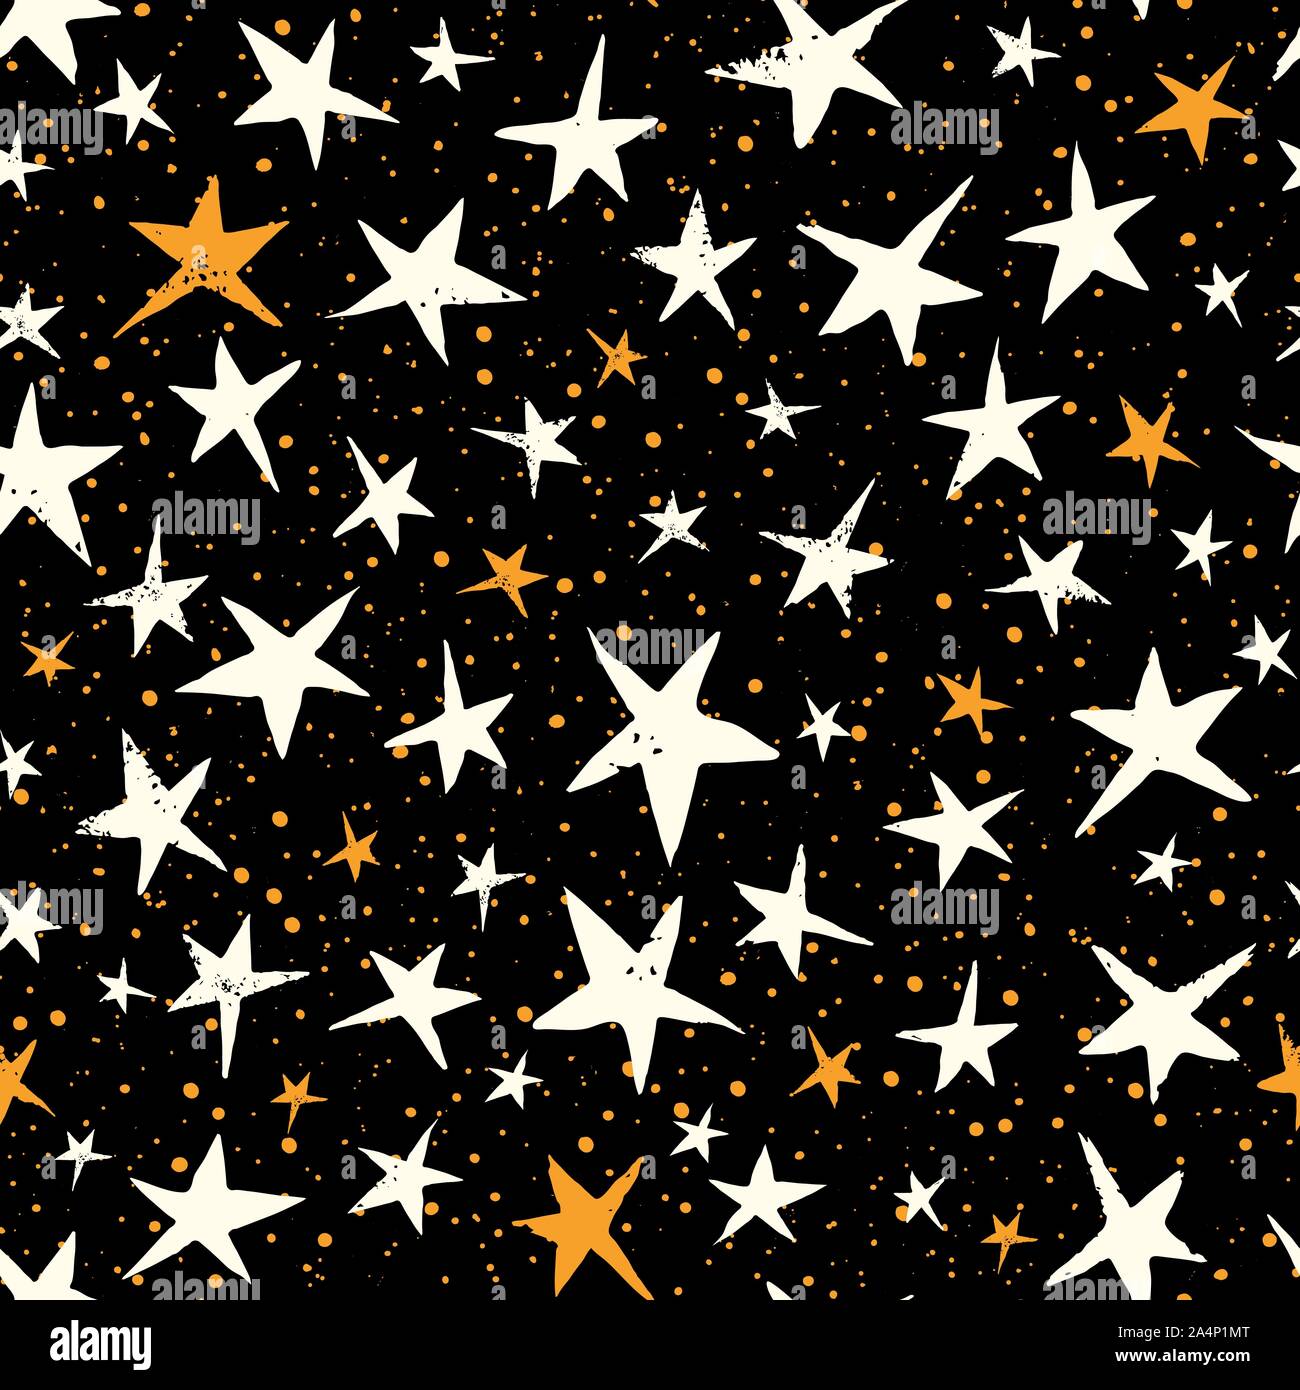 Linocut Bianco e Giallo stelle sul cielo nero Vector Seamless Pattern. Natale stampati a mano sullo sfondo. Stellato vacanza invernale Stampa. La mezzanotte ora. Illustrazione Vettoriale